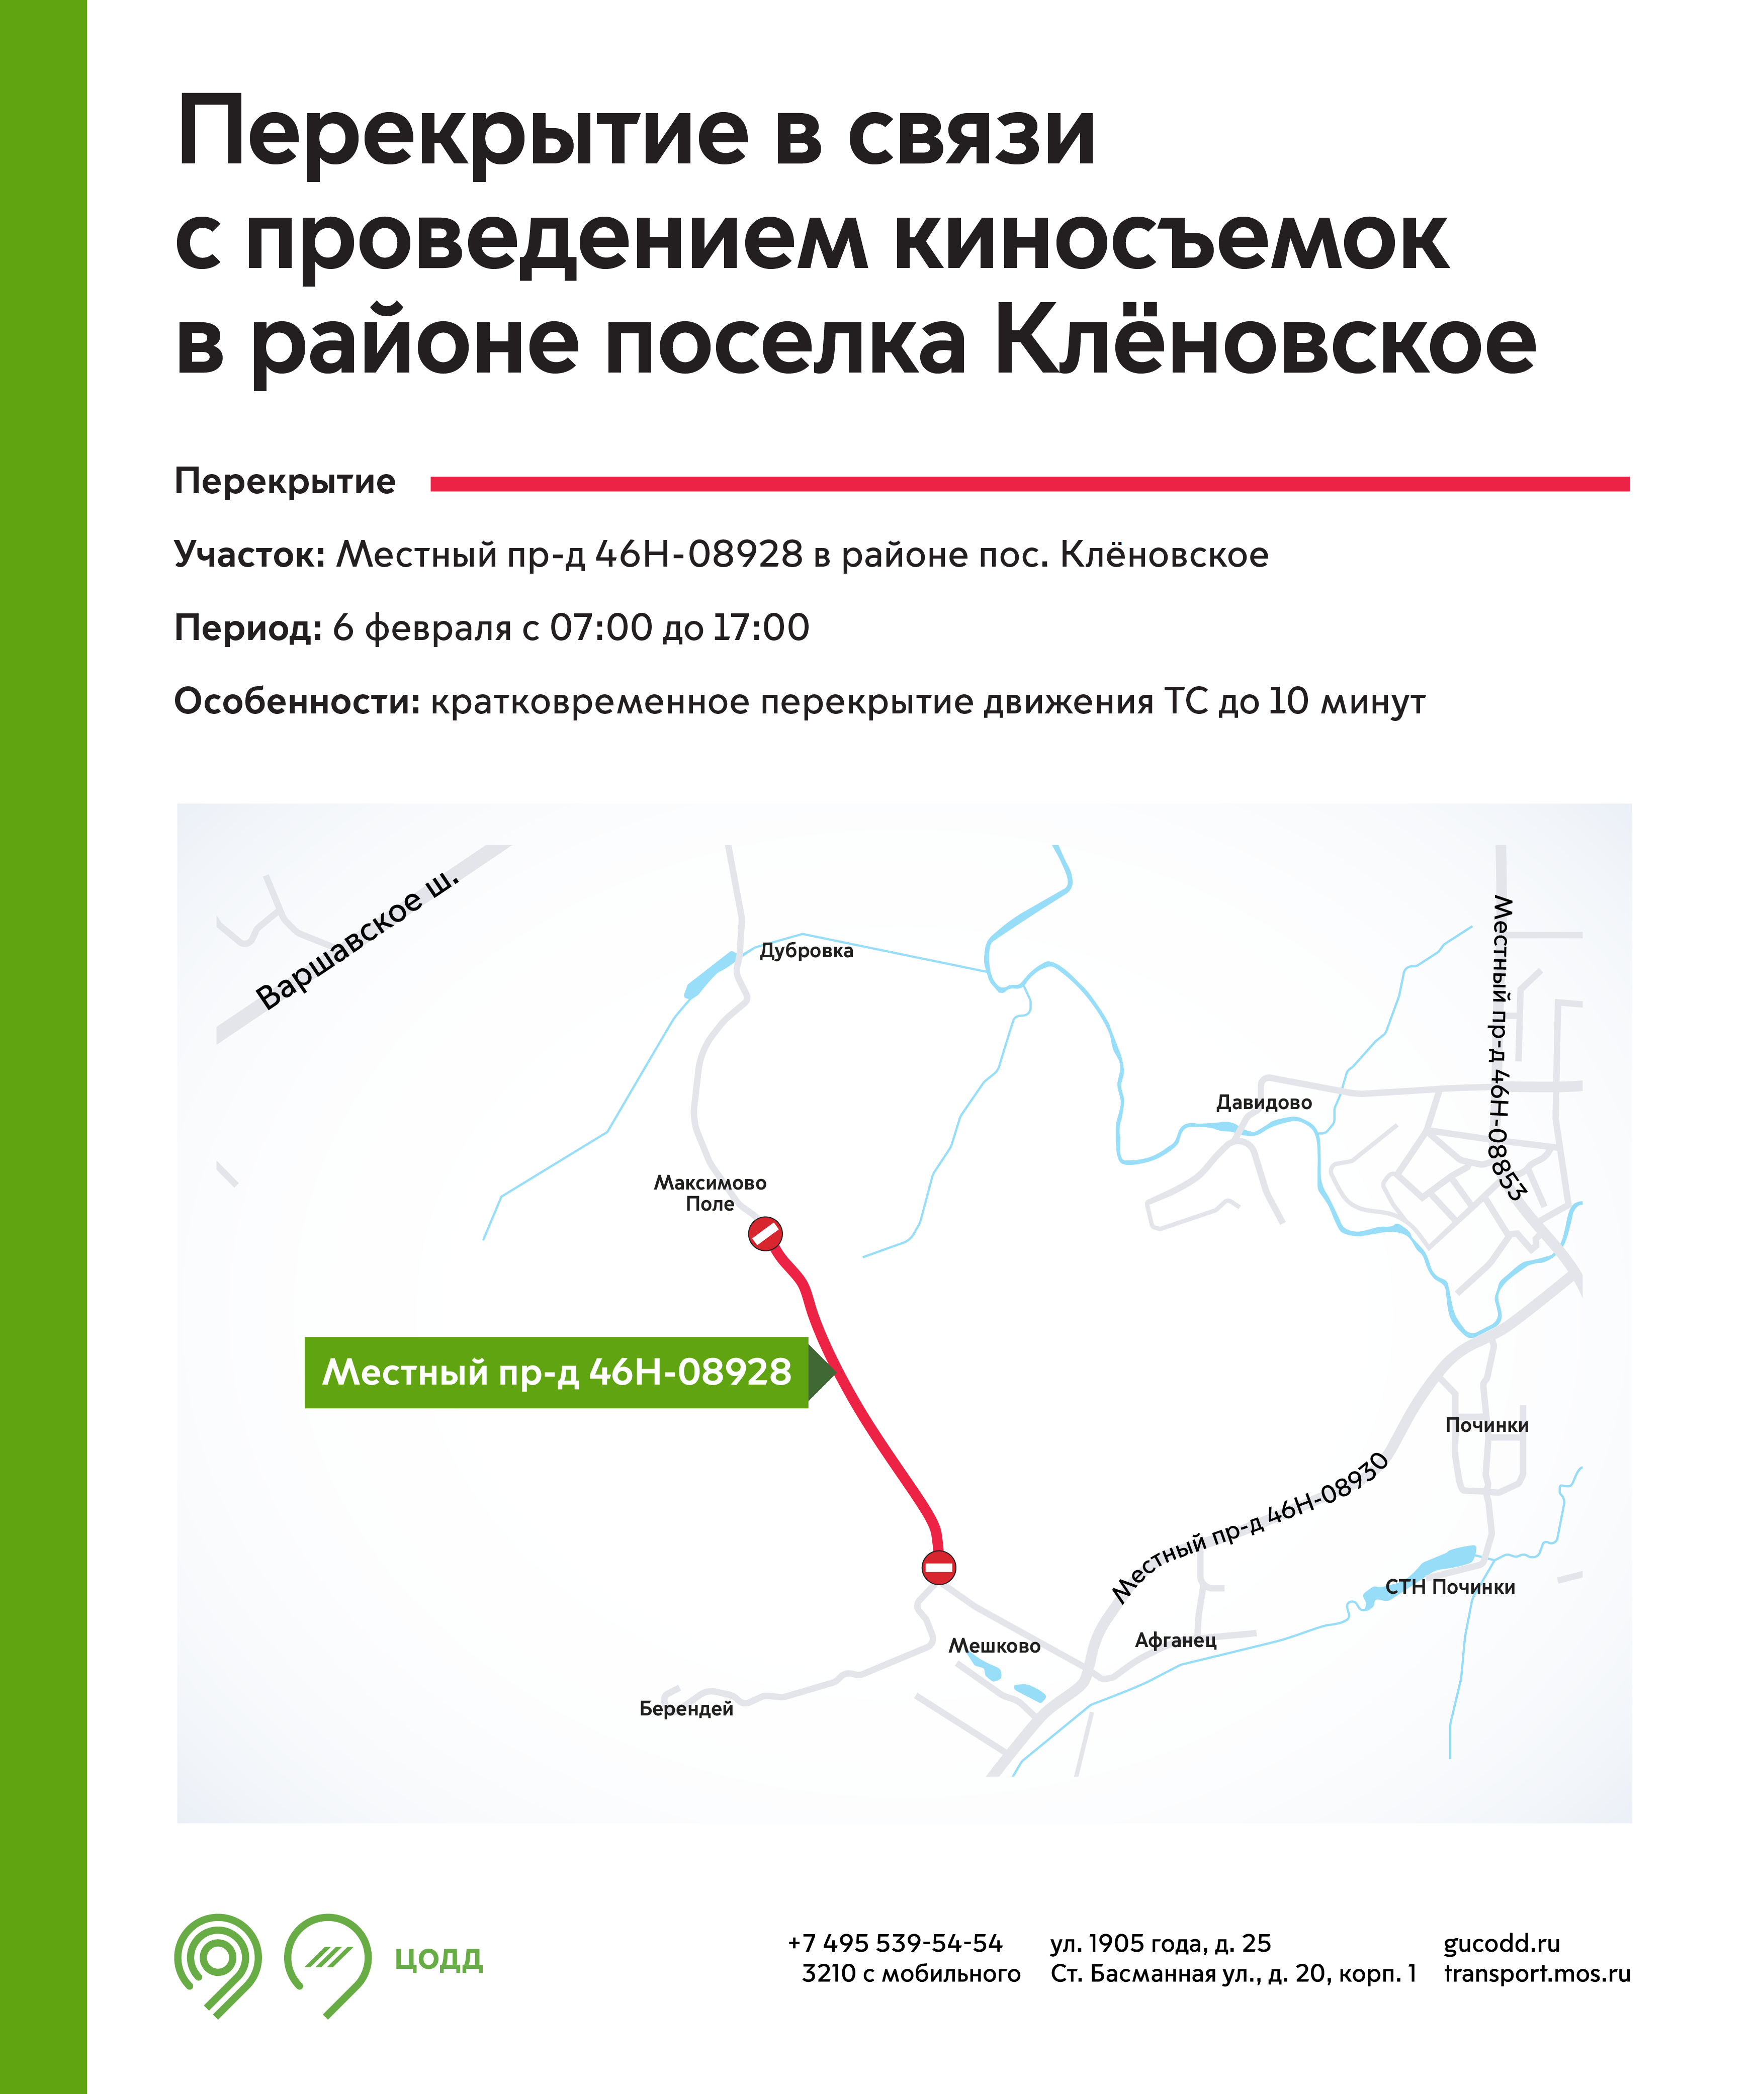 Движение в поселении Кленовском ограничат 6 февраля